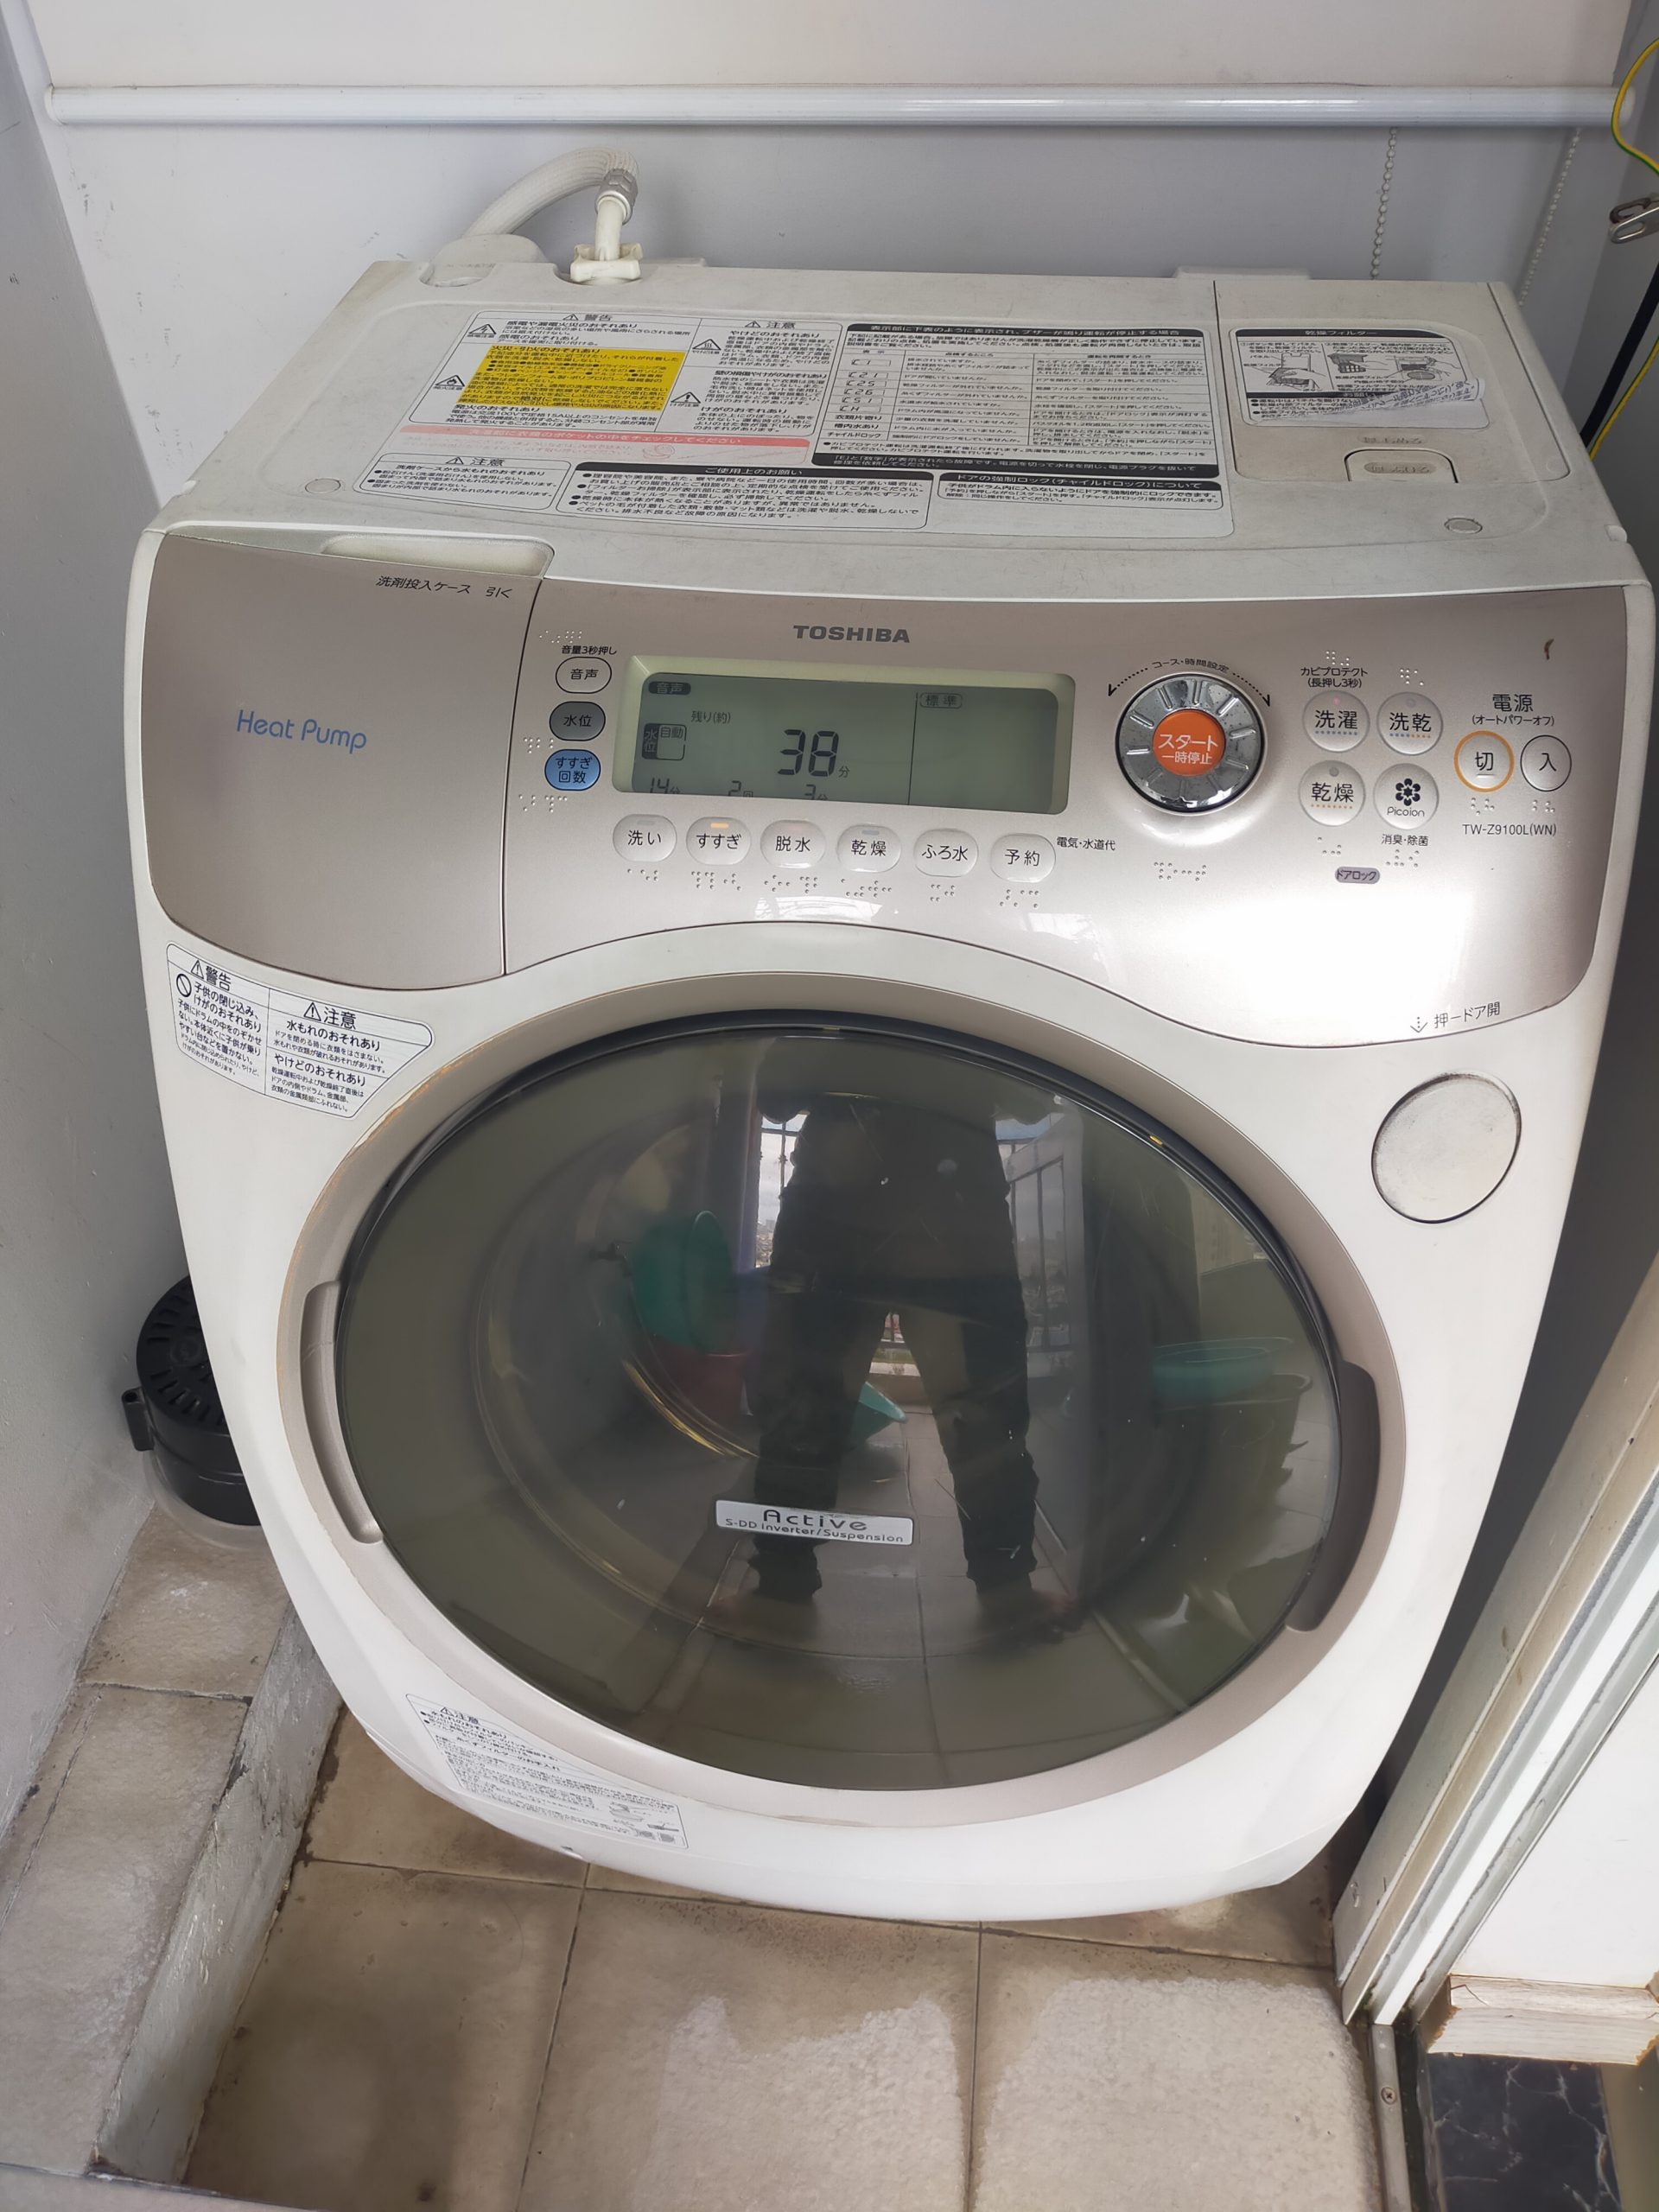 Lỗi H71 máy giặt toshiba nội địa